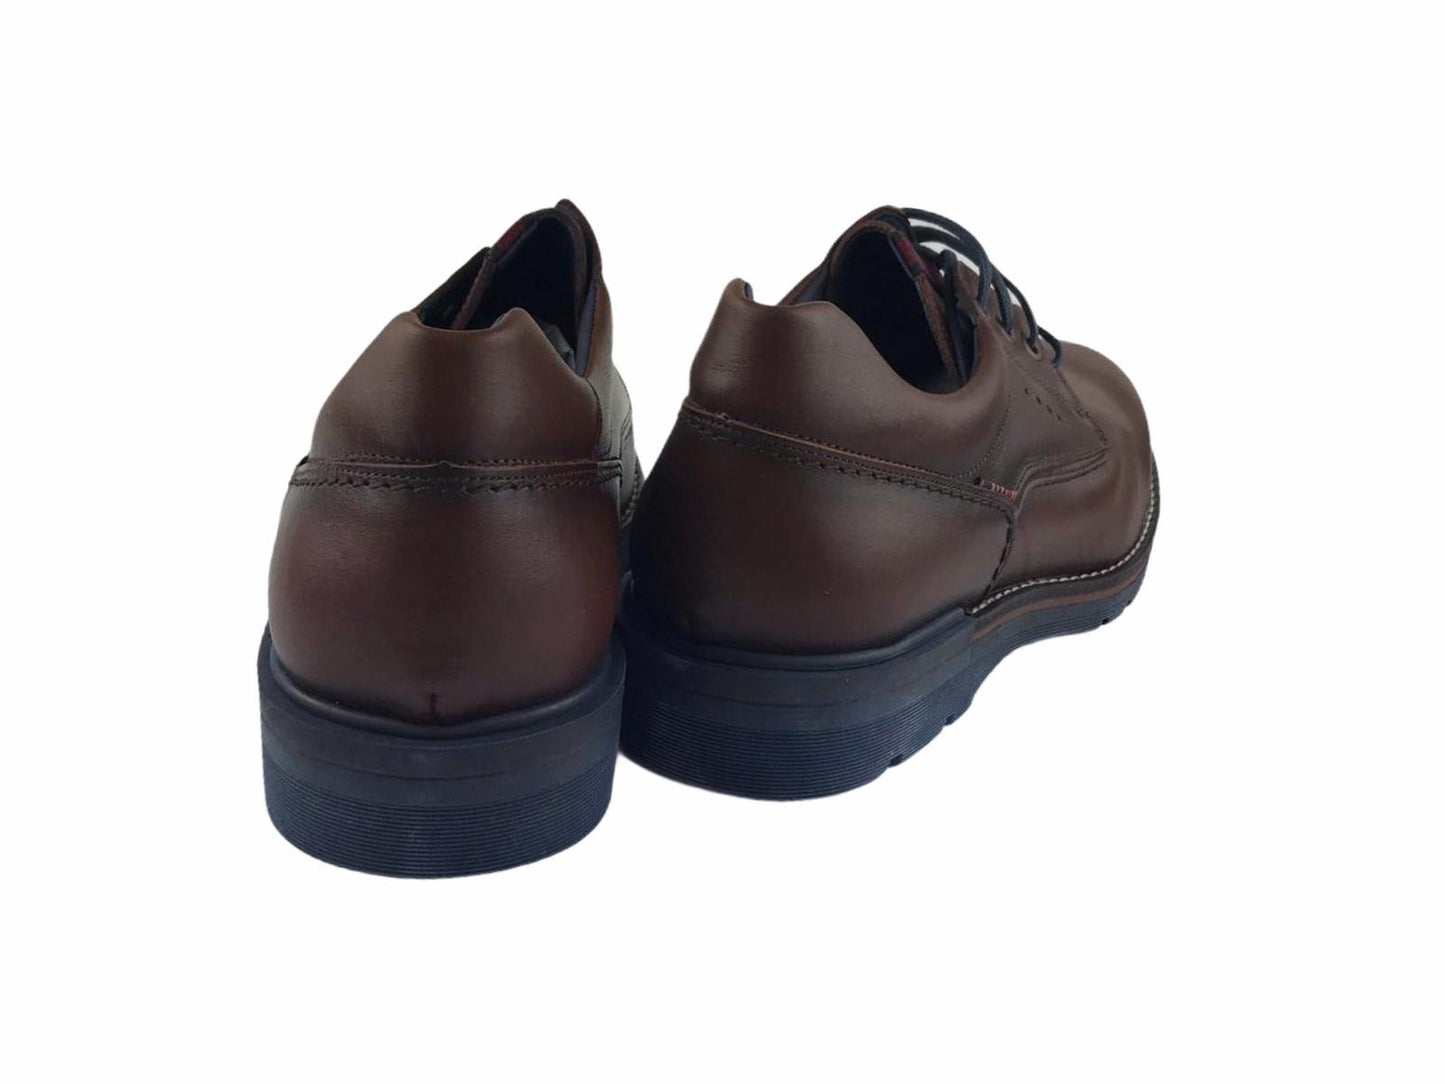 Tolino | Chaussure homme Tex avec lacet Celtic 721 marron